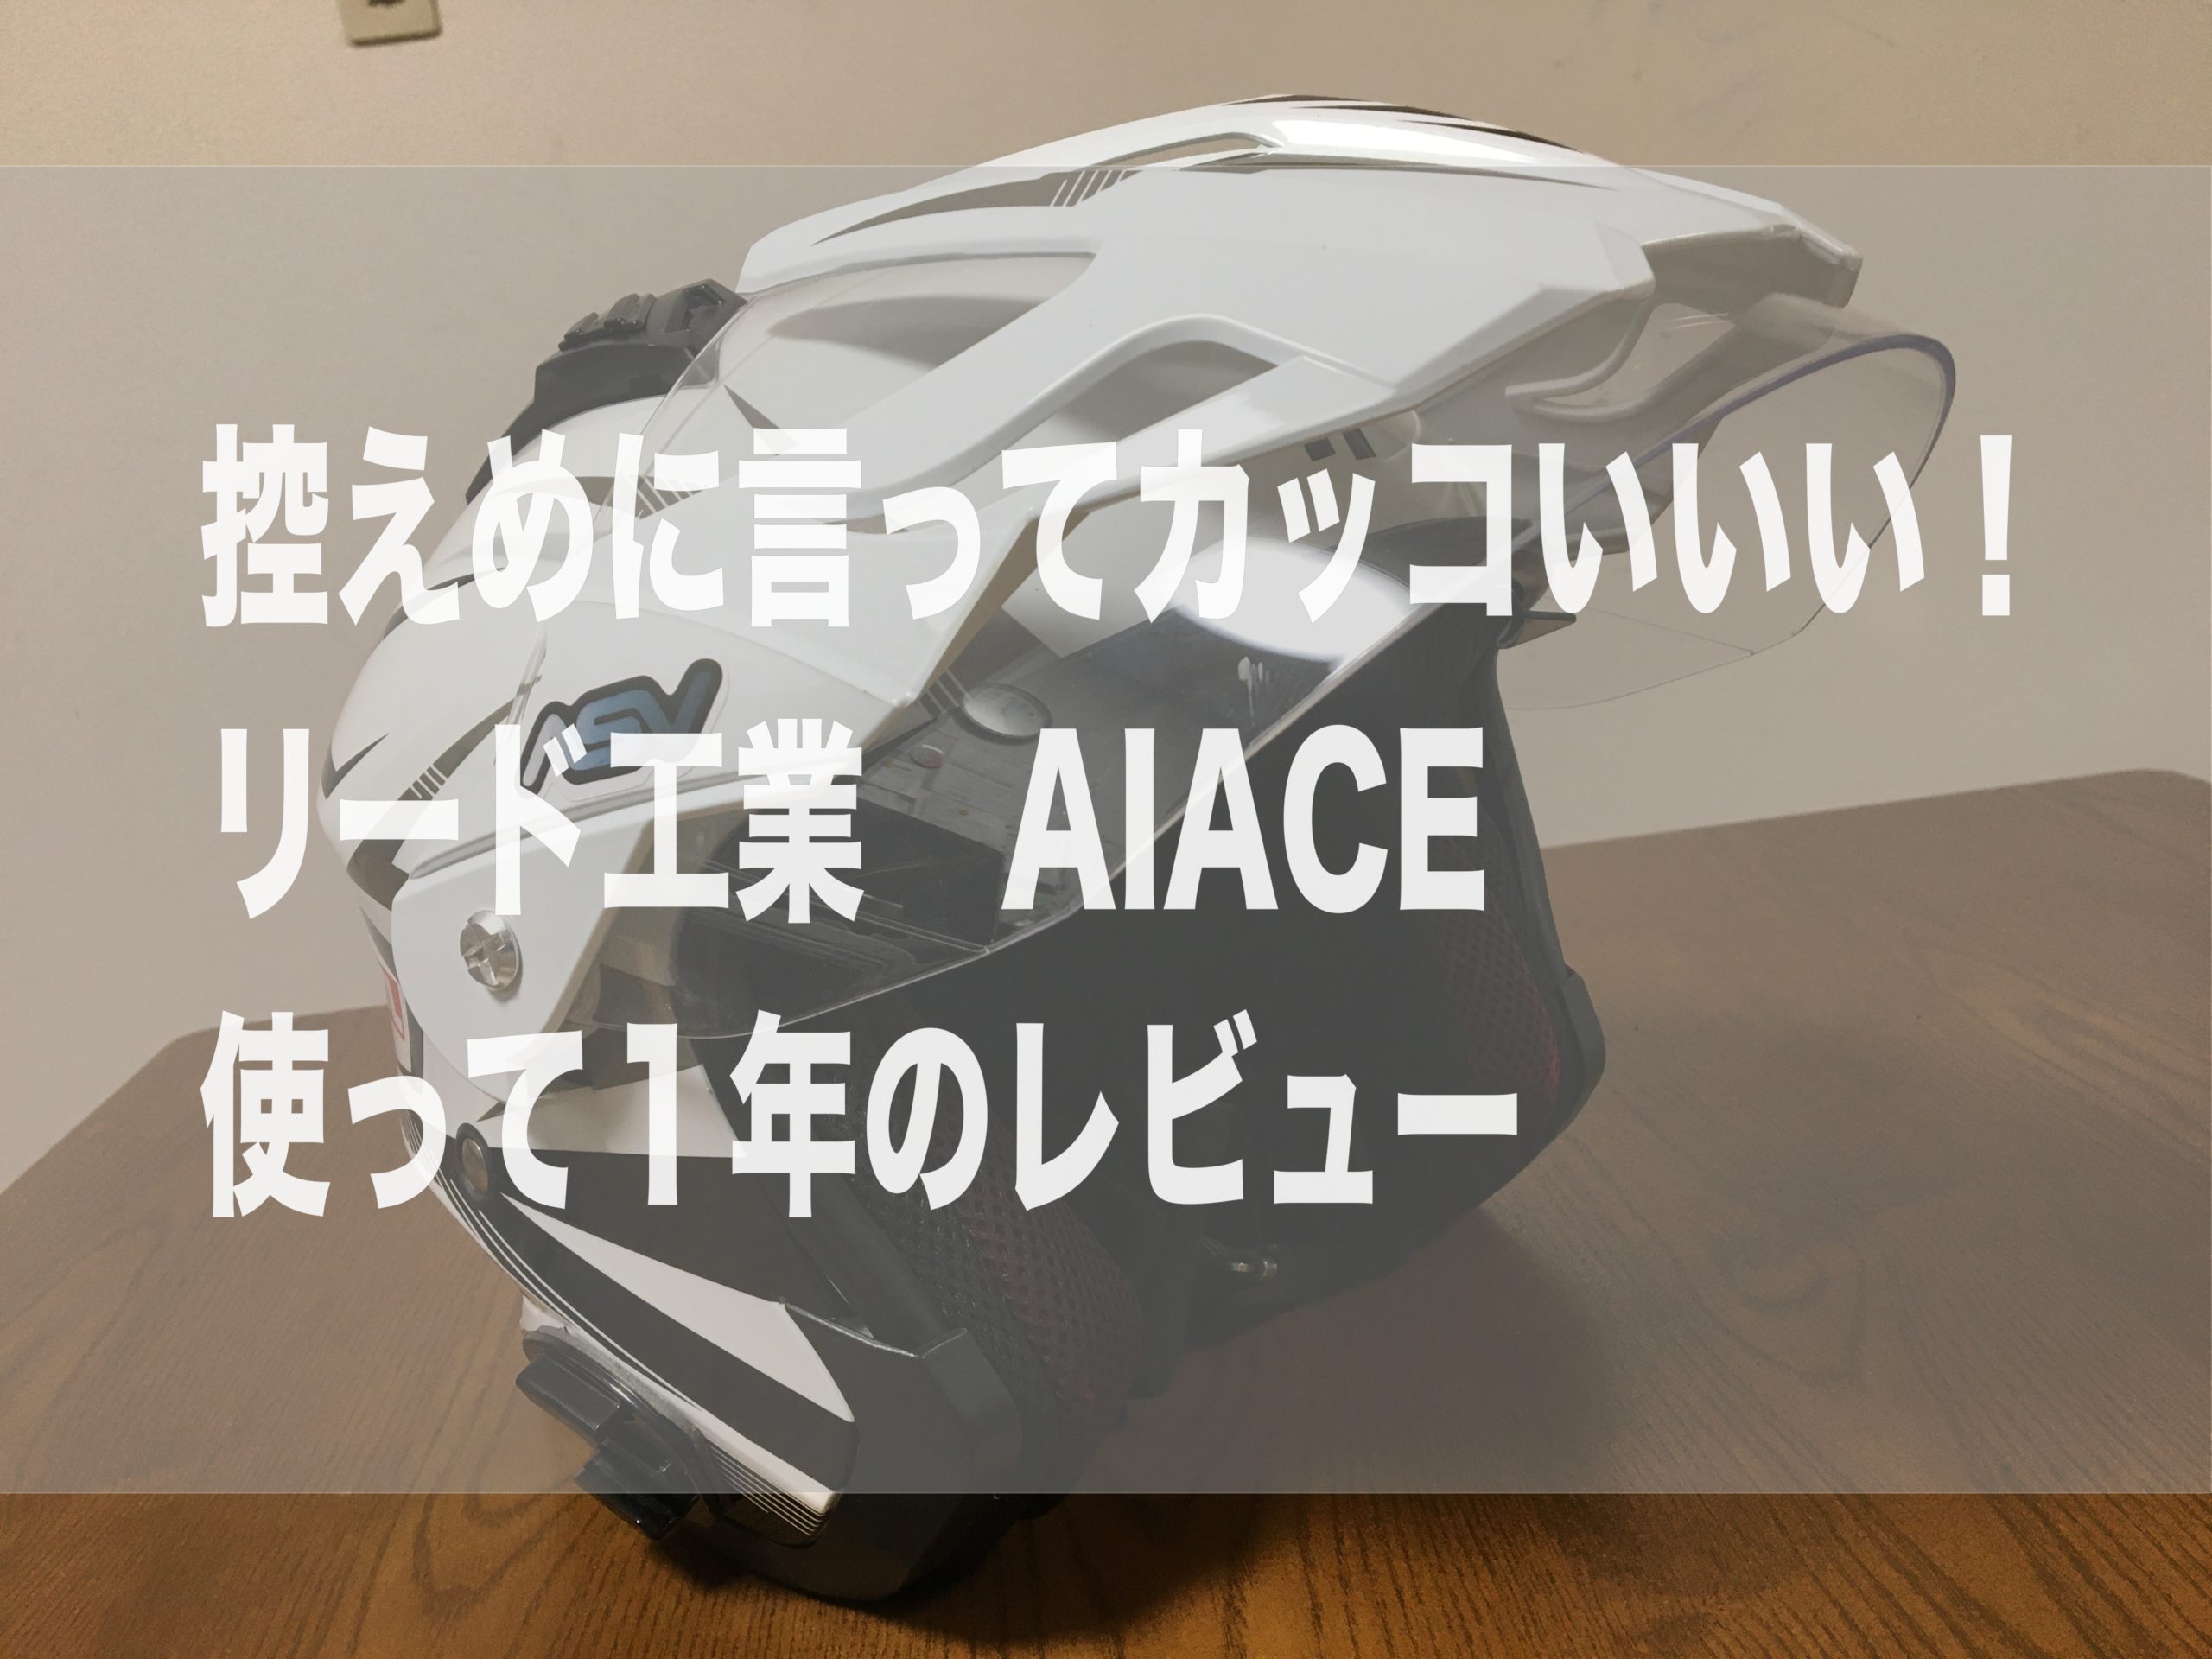 リード工業 Aiace オススメのバイザー付きジェットヘルメット Off Road Hack